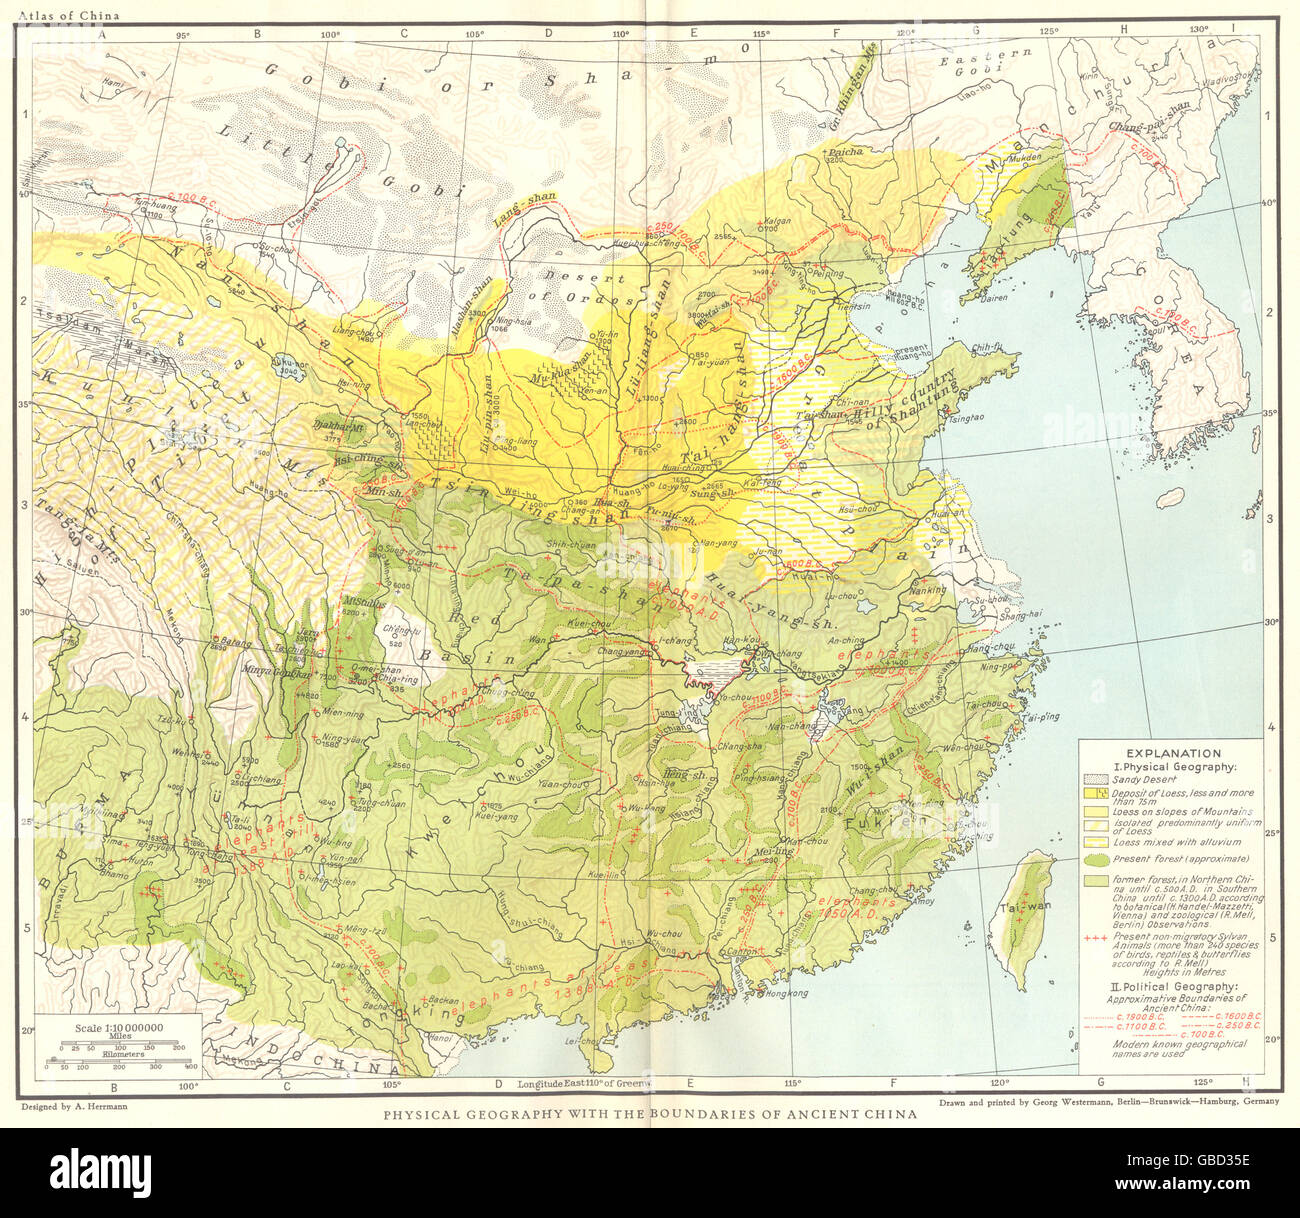 Cina: geografia fisica con i confini della Cina antica, 1935 mappa vecchia Foto Stock